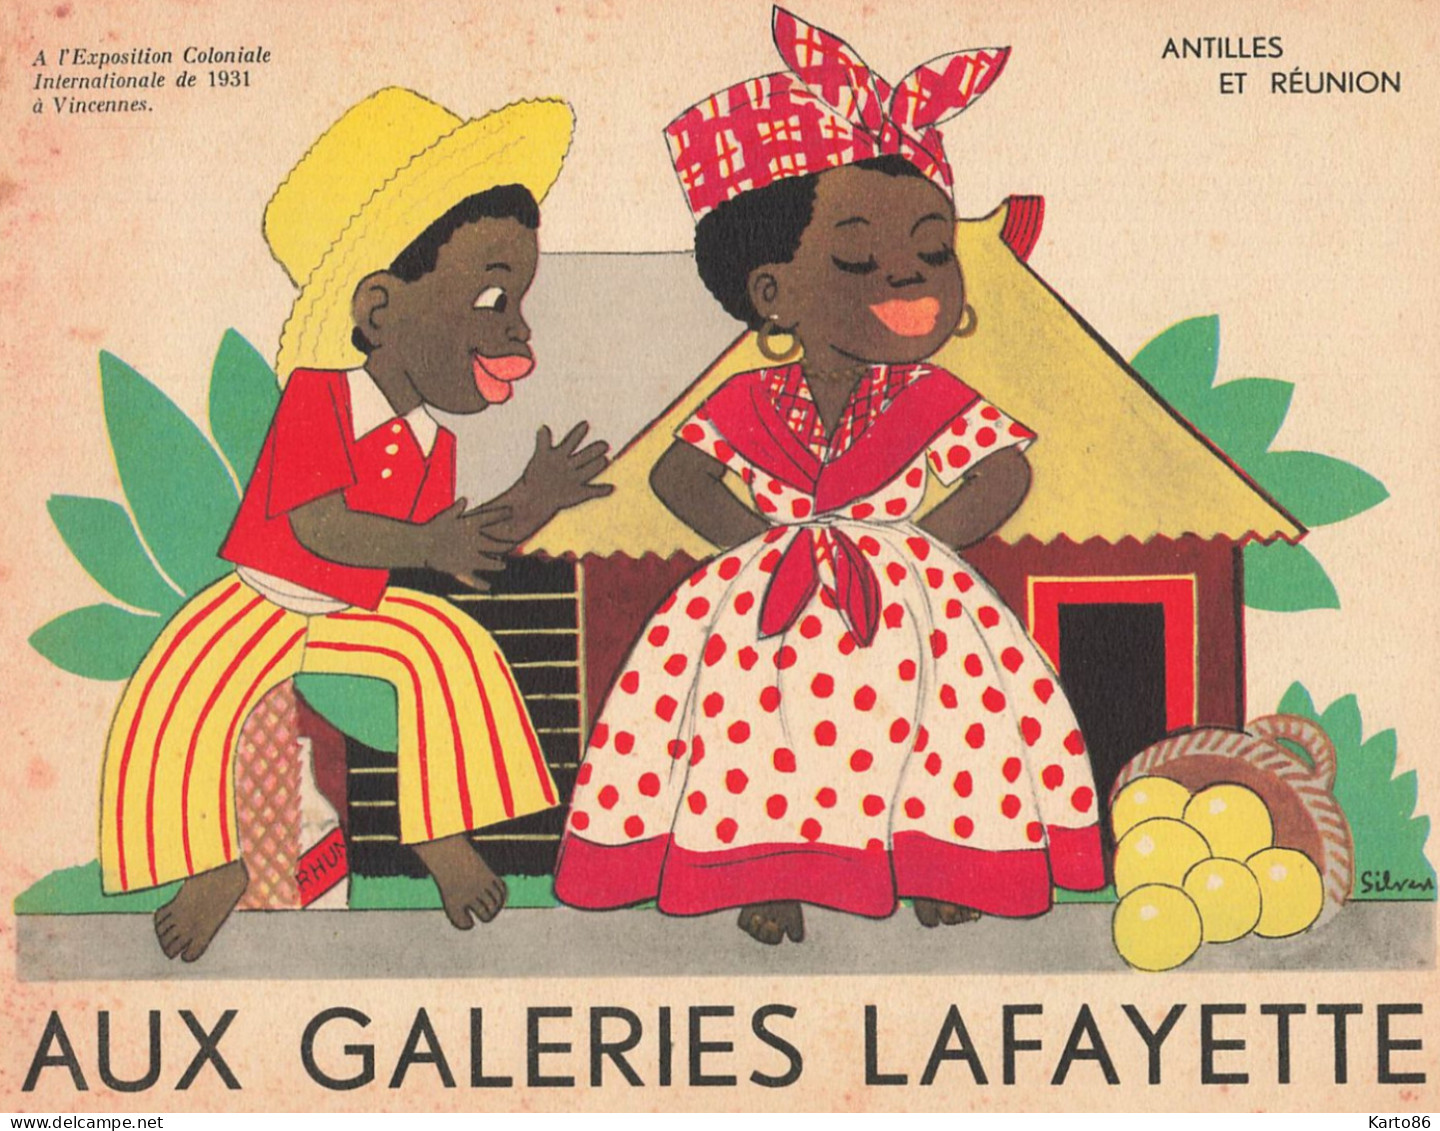 AUX GALERIES LAFAYETTE * 9 Publicités Illustrateur Silvestre * Exposition Coloniale Vincennes 1931 éthnique Ethno Ethnic - Advertising